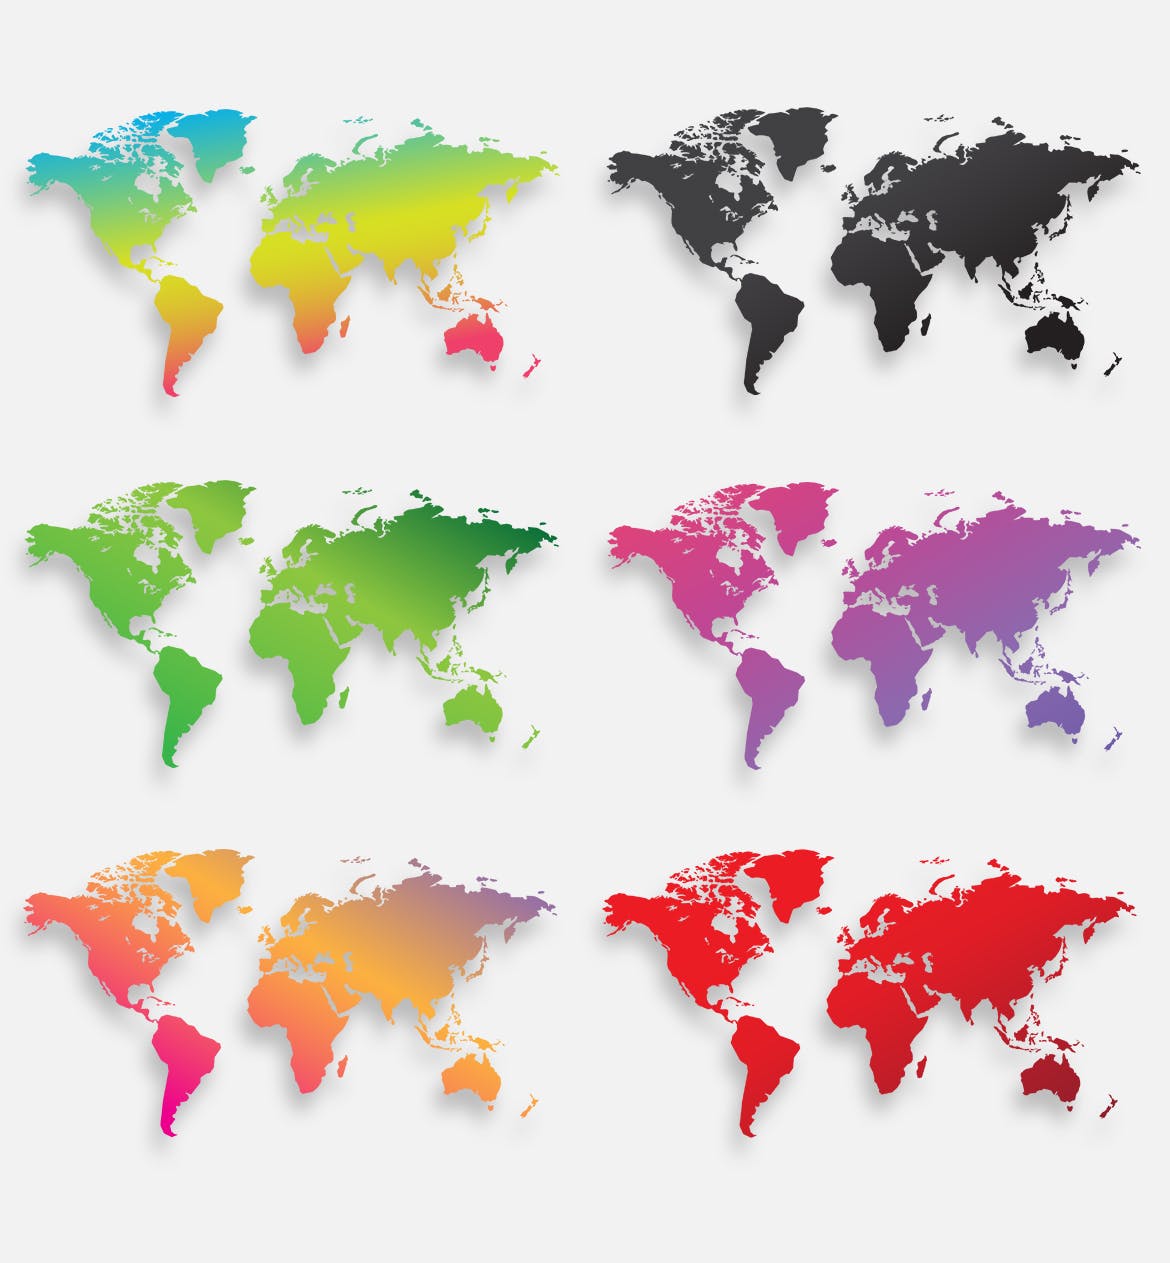 40种设计风格世界地图矢量图形设计素材下载 Map of the world 40 Version插图(6)